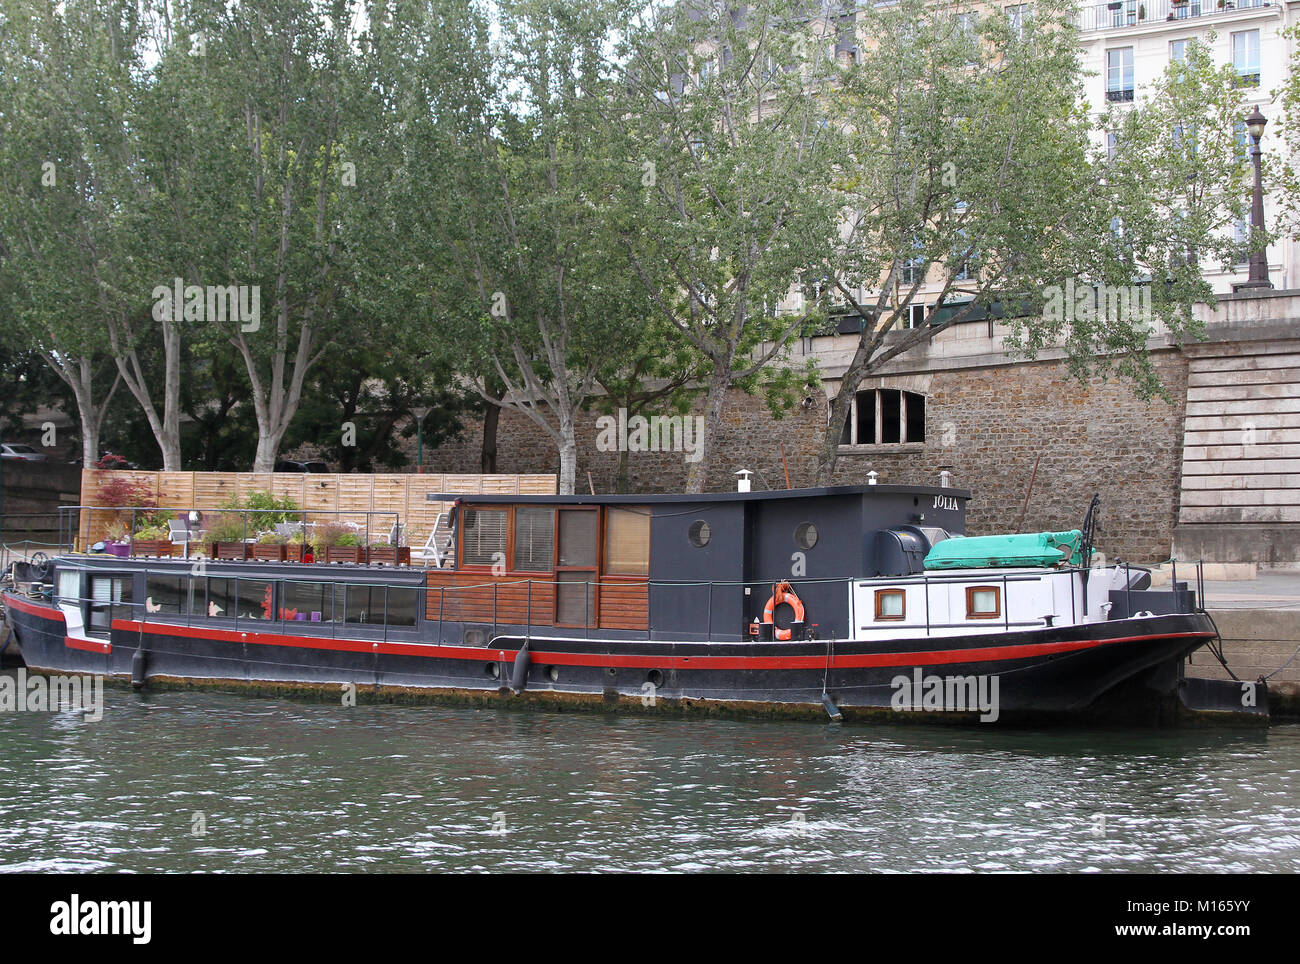 Schwarze und rote Hausboot beschriftet "Jolia" entlang der Seine, Paris, Frankreich. Stockfoto